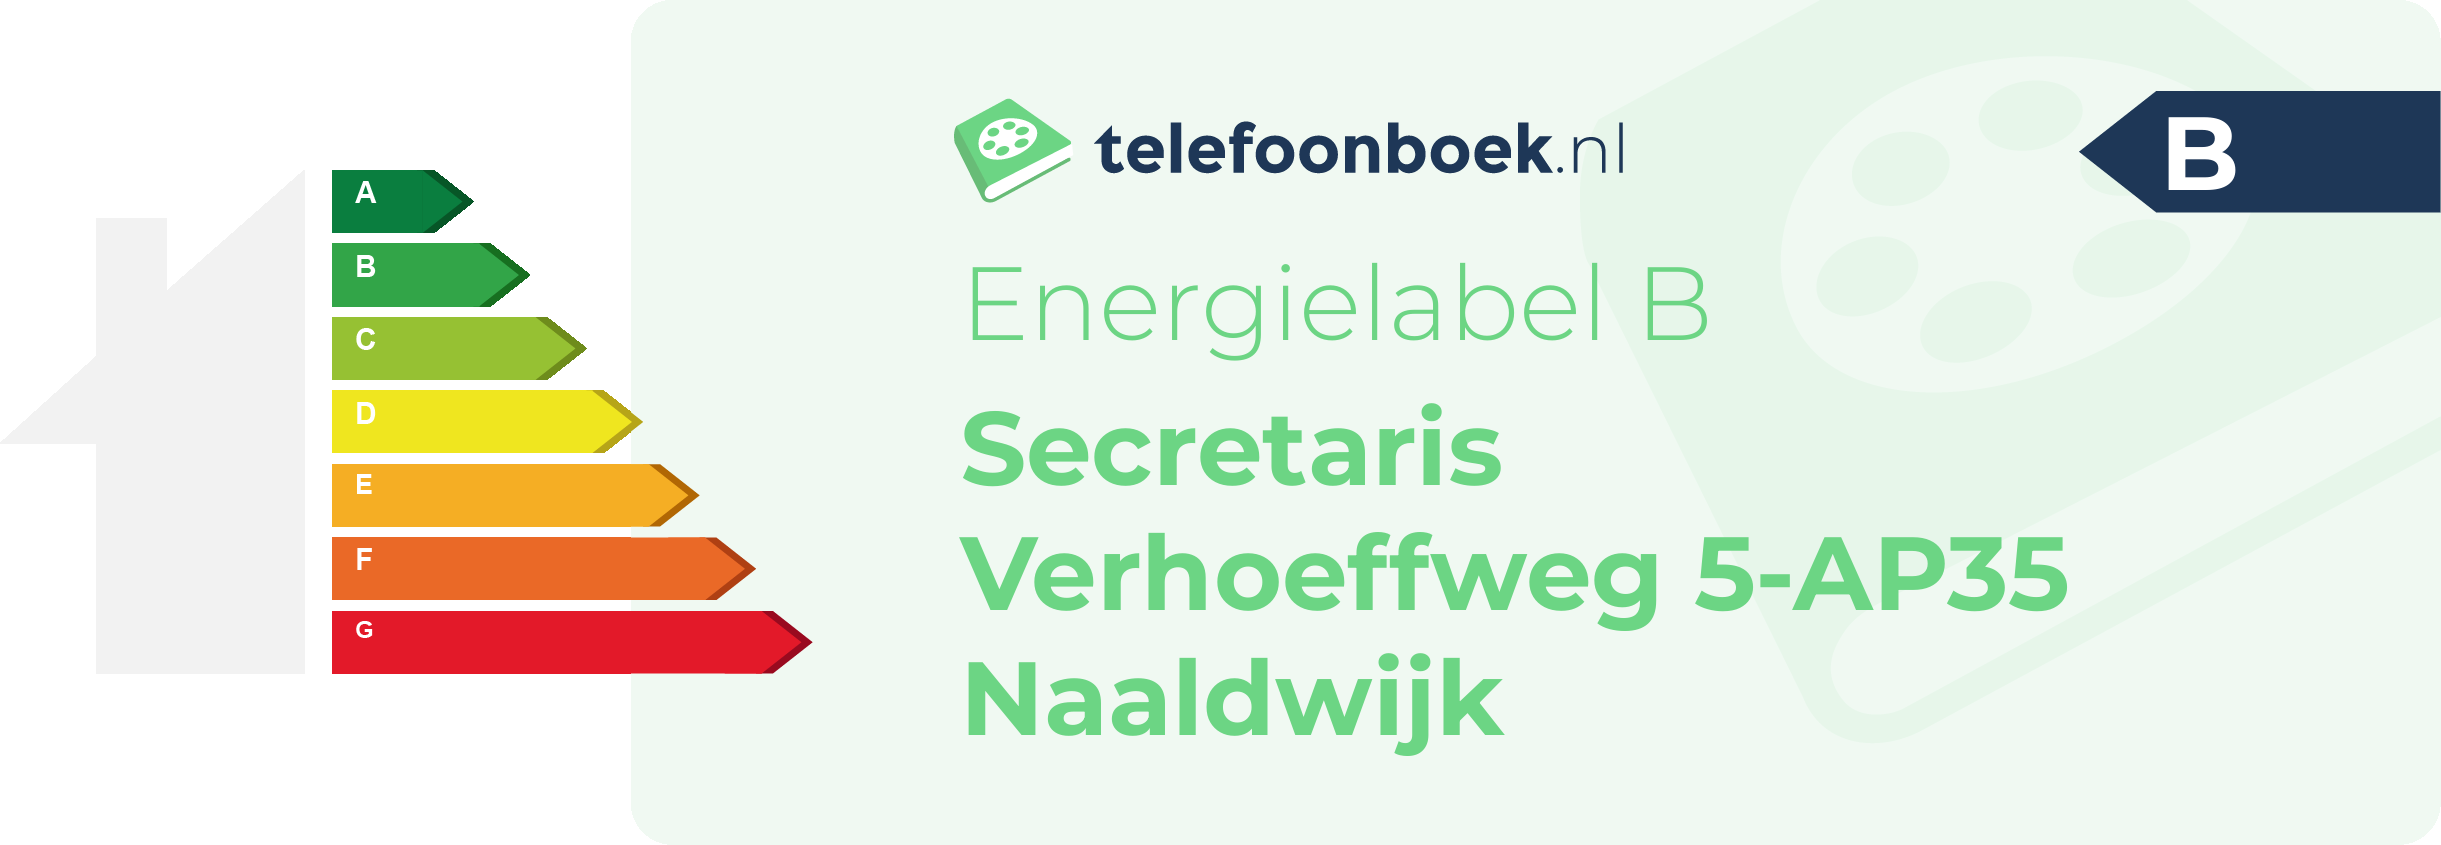 Energielabel Secretaris Verhoeffweg 5-AP35 Naaldwijk